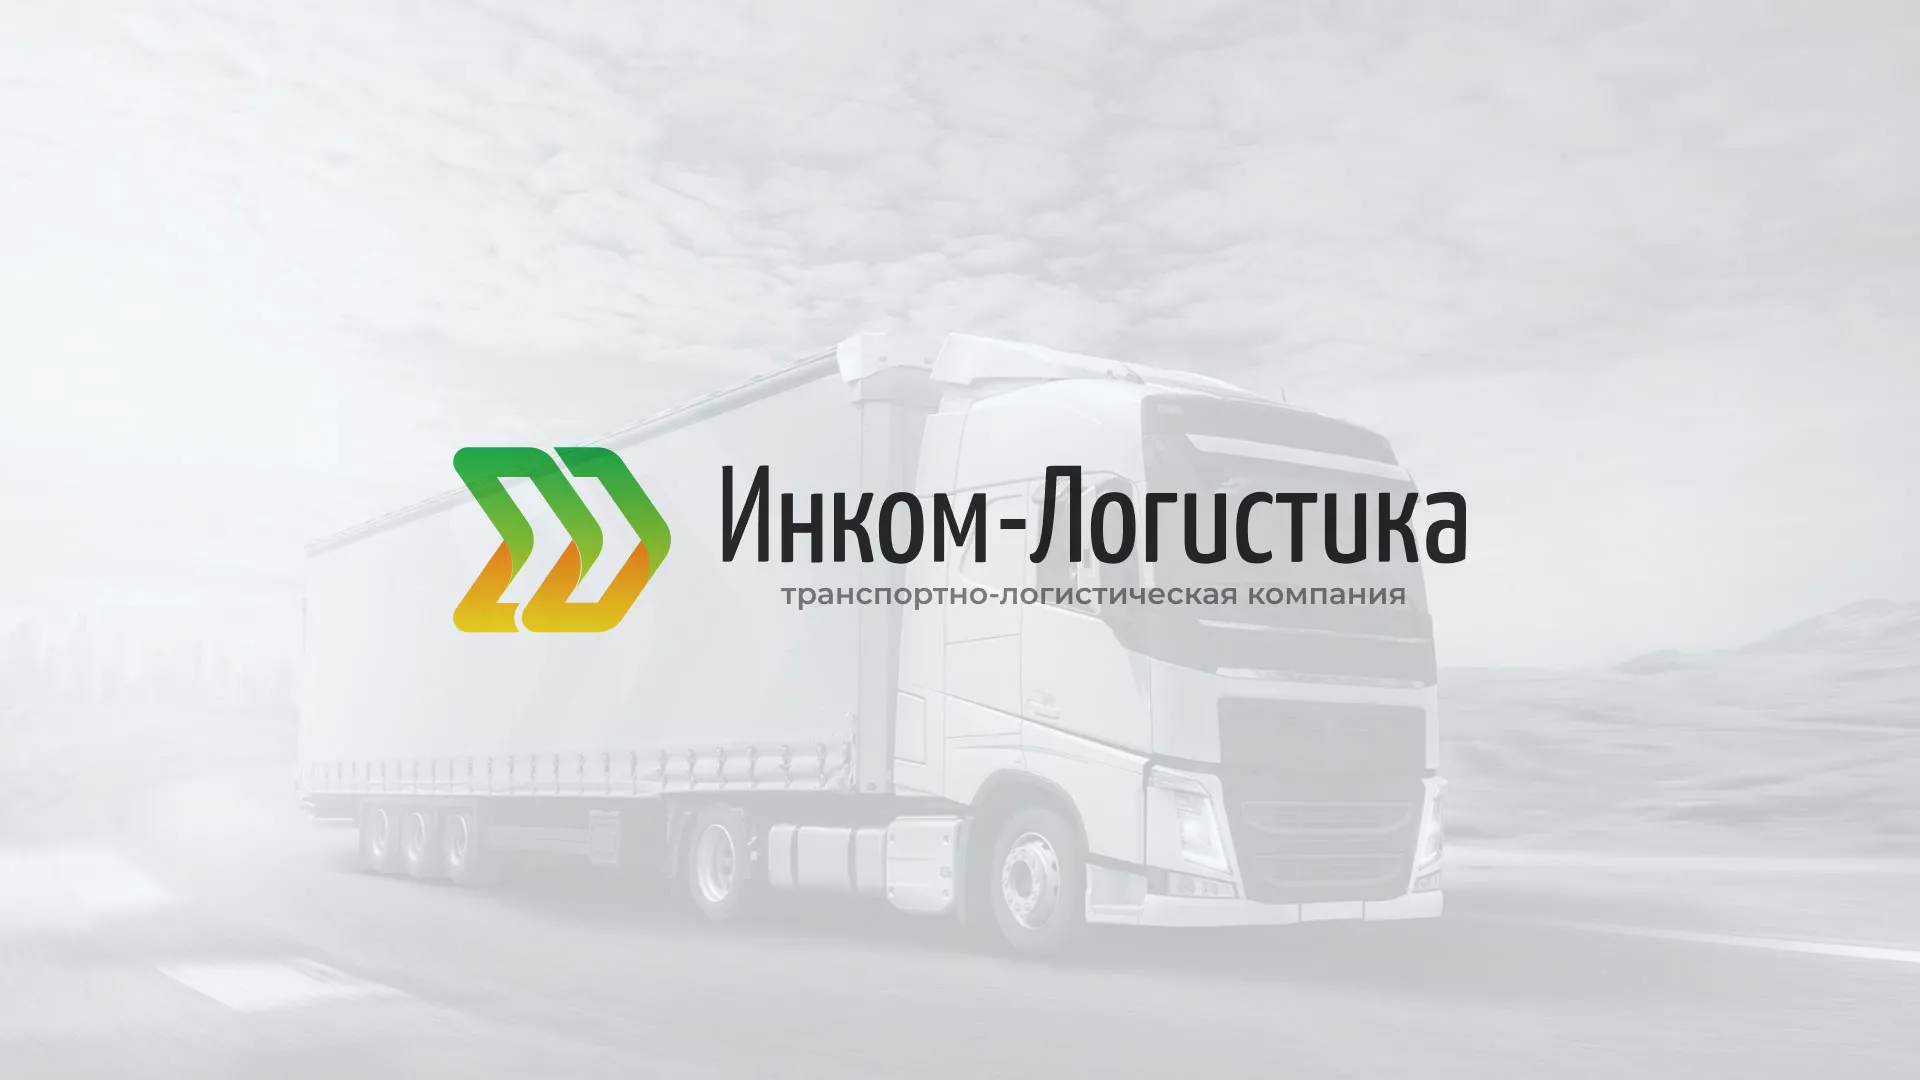 Разработка логотипа и сайта компании «Инком-Логистика» в Рязани